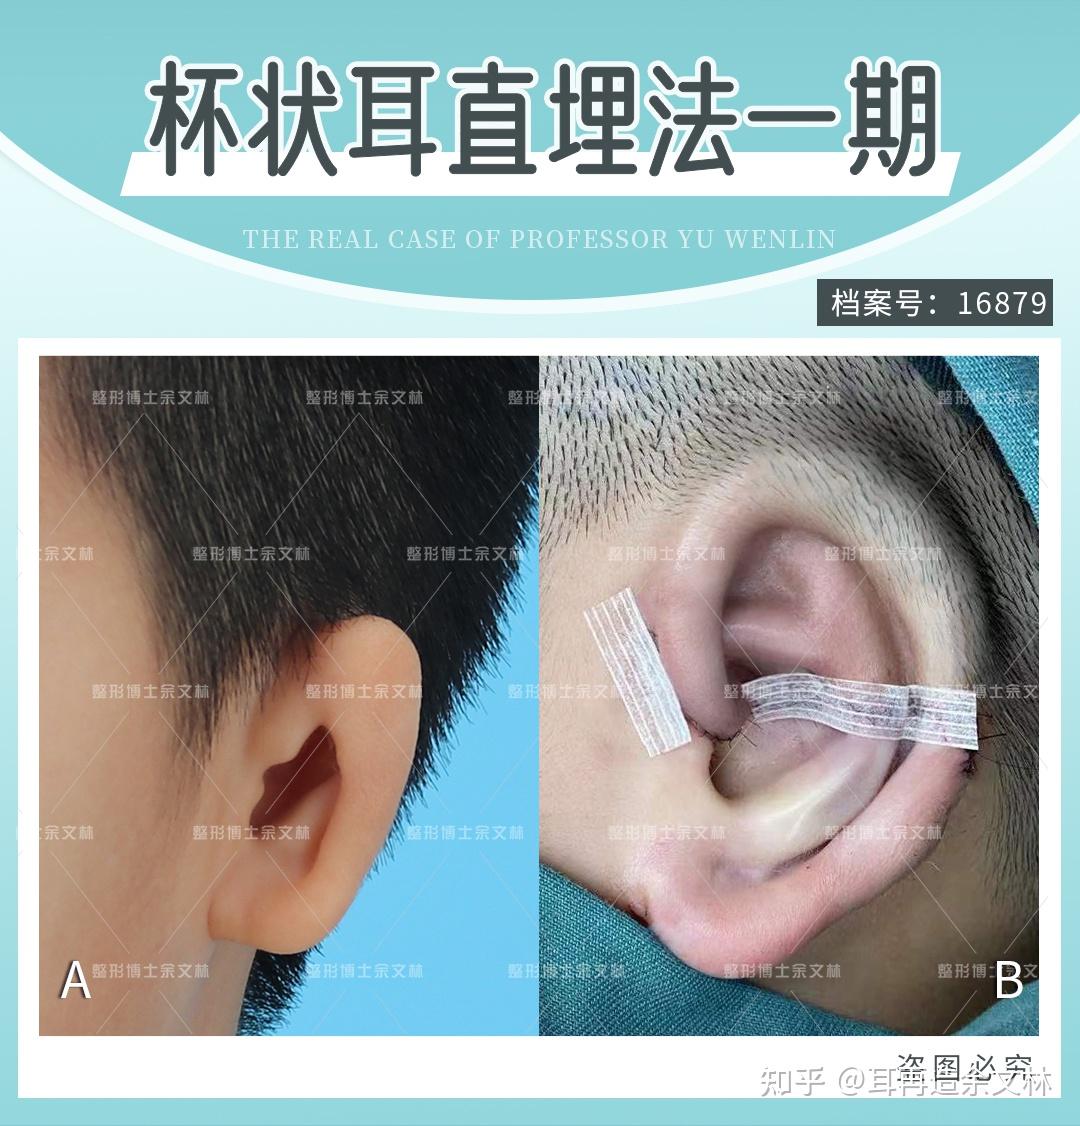 【案例分析】右耳比左耳小，31岁小耳畸形患者忙做手术矫正 - 知乎